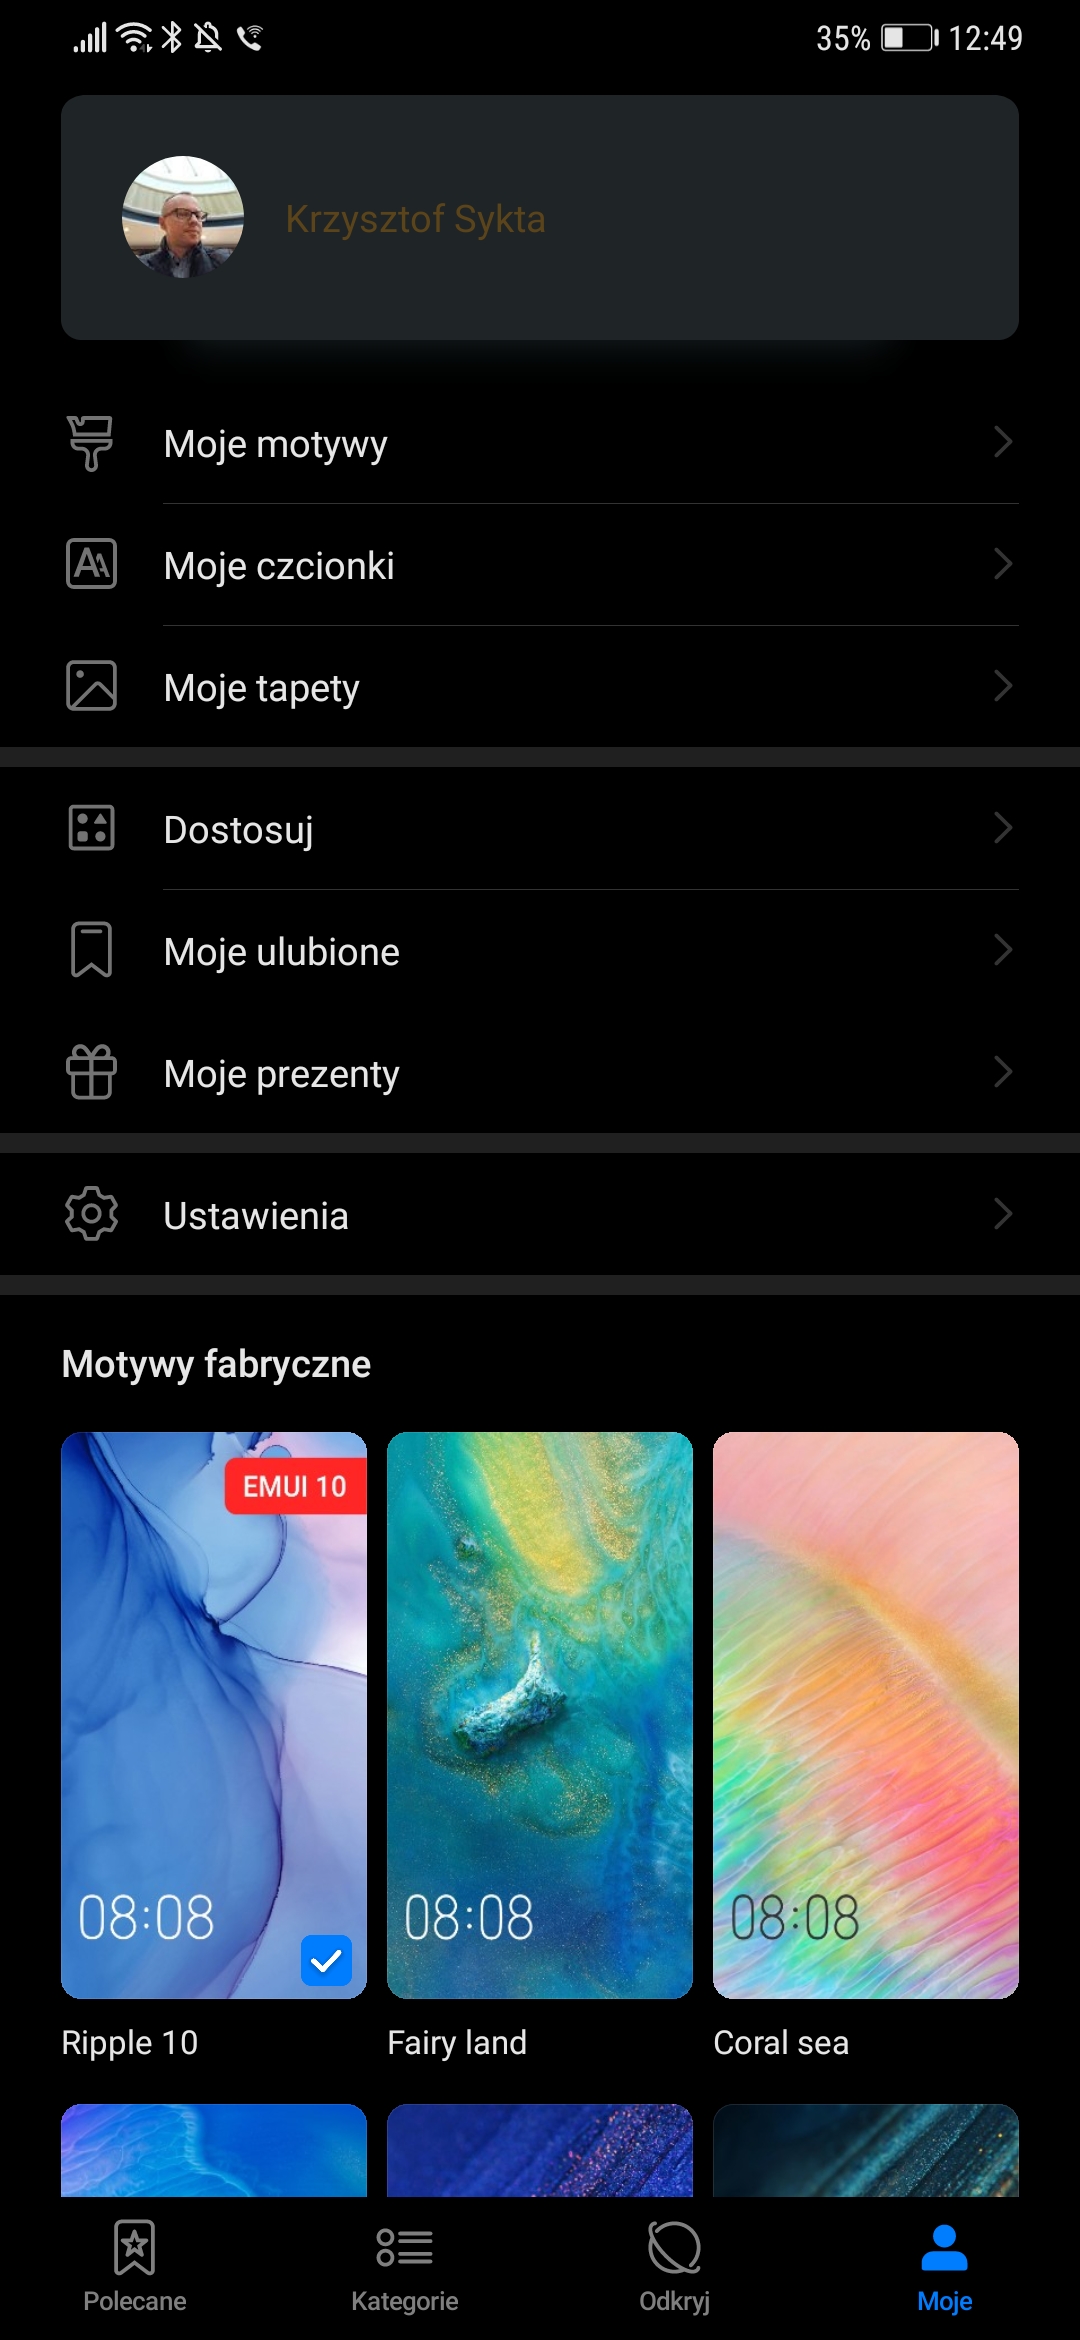 Huawei Android 10 EMUI 10 beta